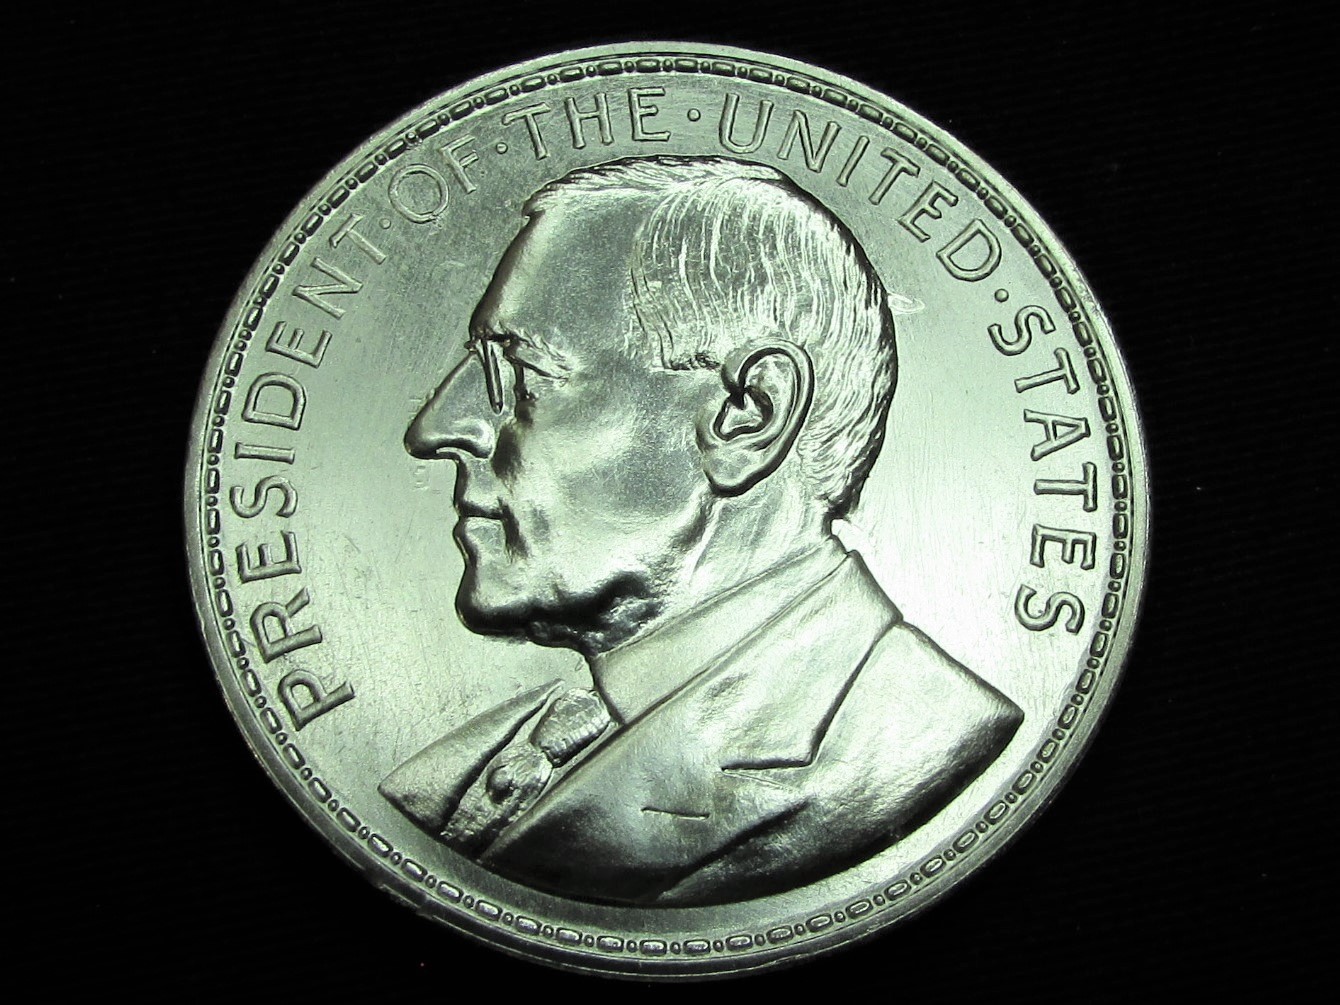 2020 Wilson 100 Year Anniversary Medal (Nickel) - obverse.JPG